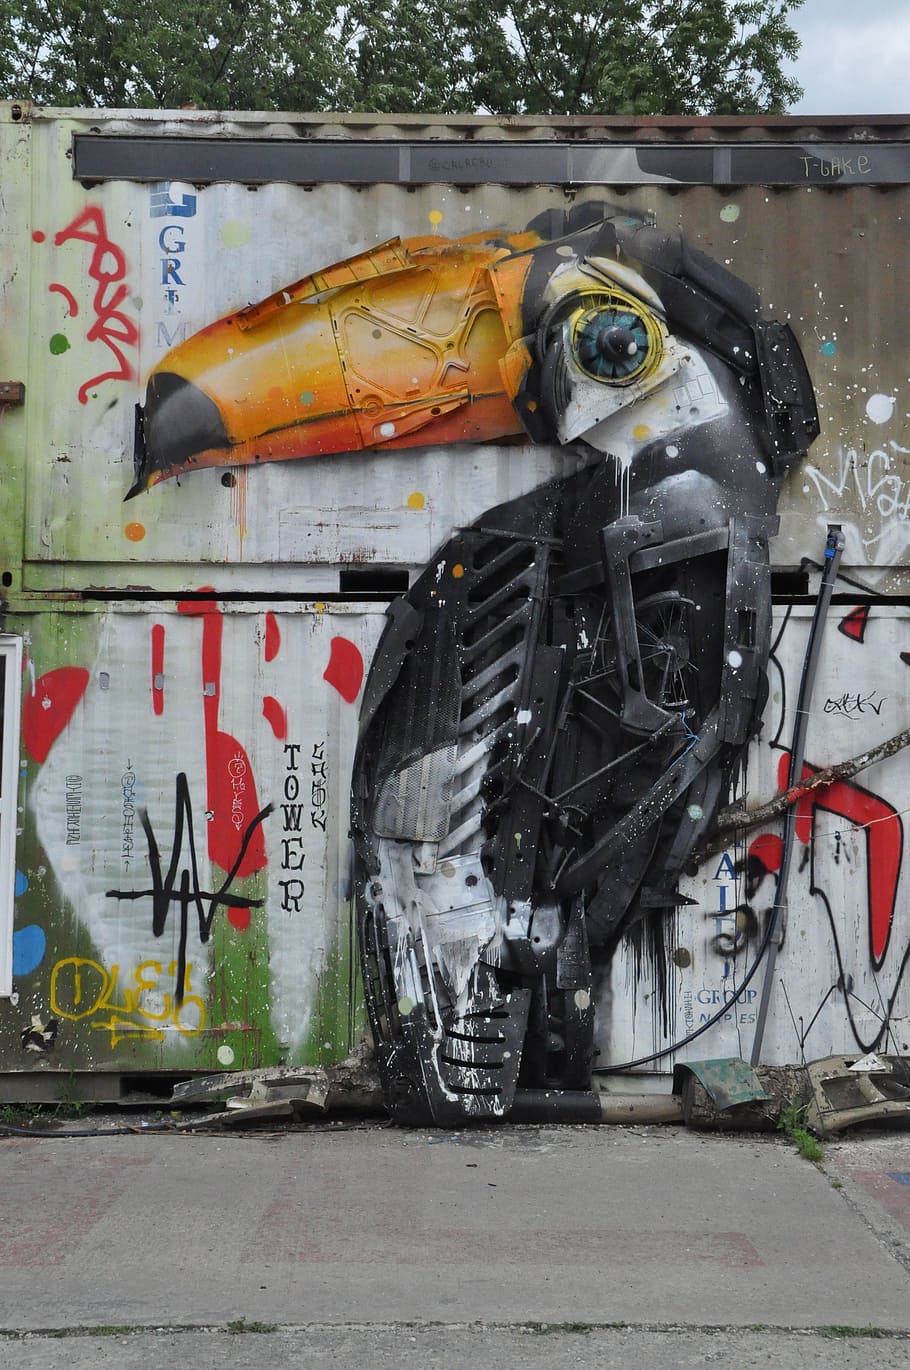 Berlin, Street Art, Art, Graffiti, Facade, graffiti, mural, spray, urban spree, creativity, transportation